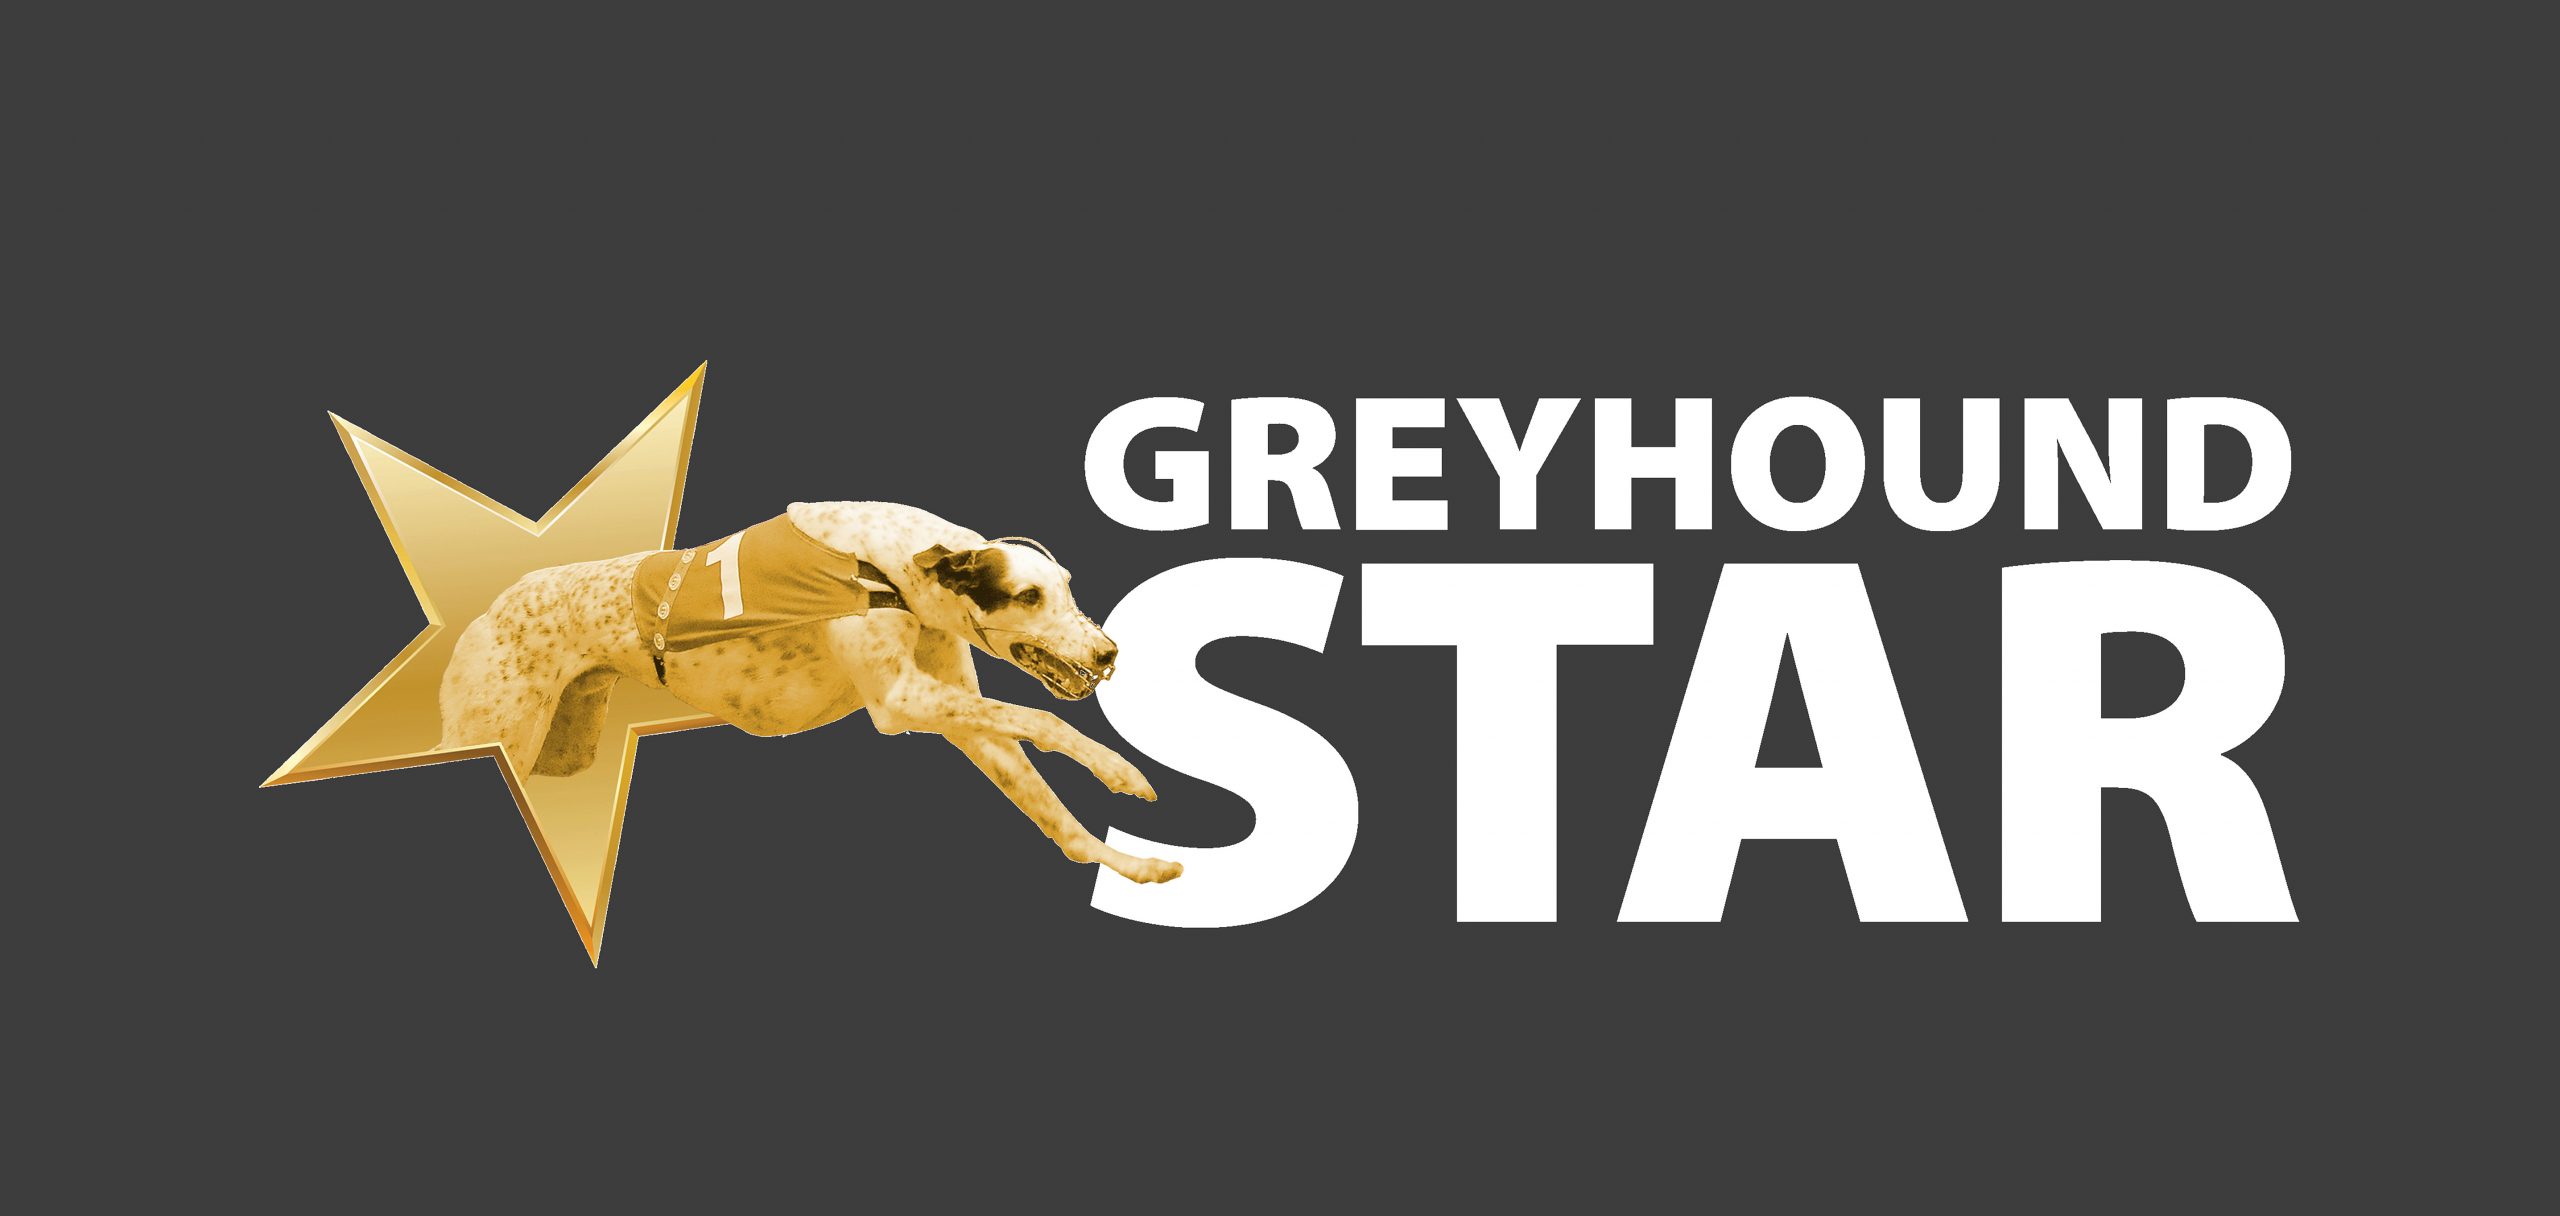 Greyhound Star Website Greyhound Star News From The Greyhound Industry 4483